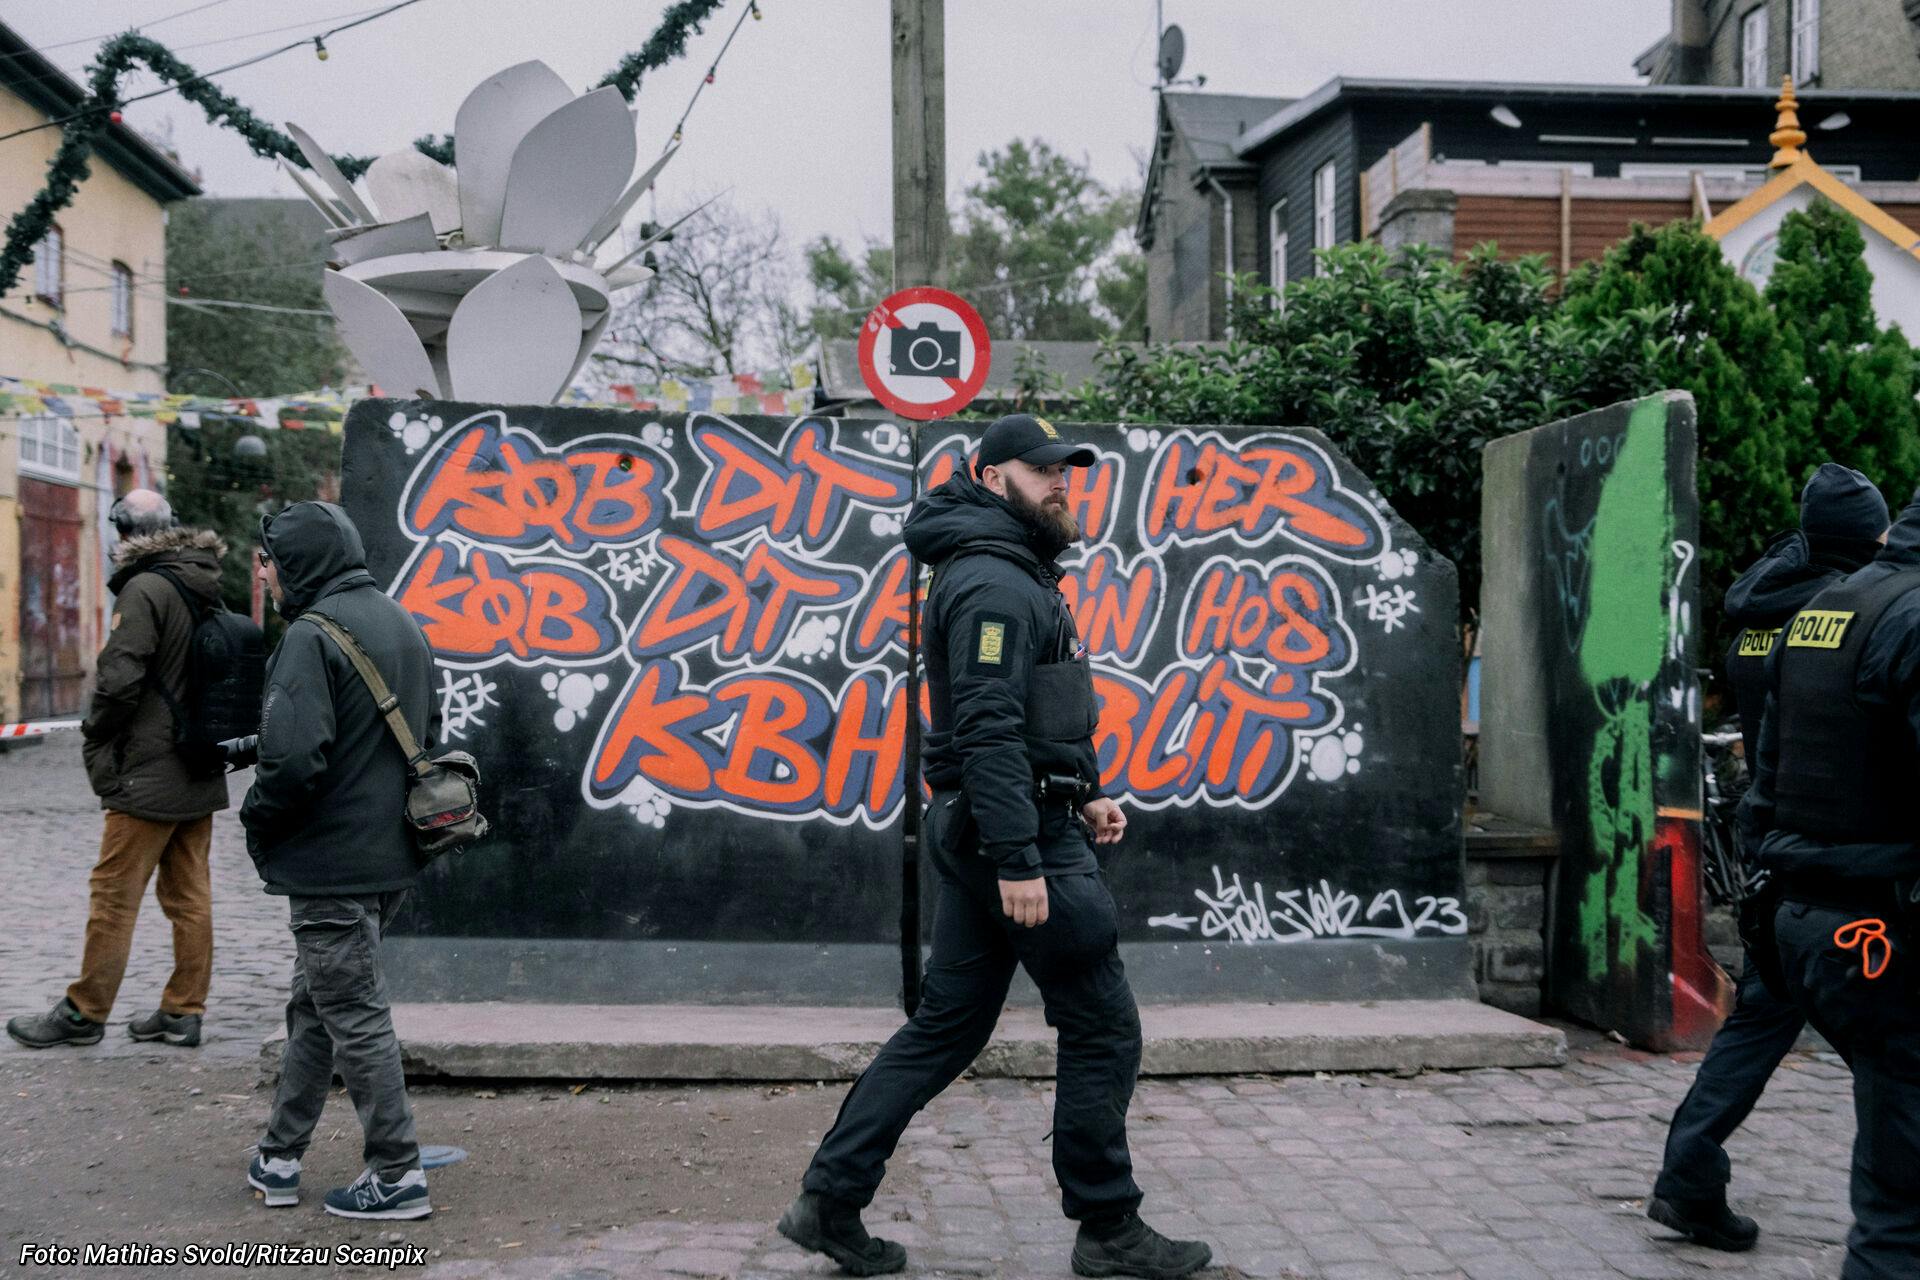 Pusher Street på Christiania ryddes og lukkes midlertidigt af Københavns Politi.